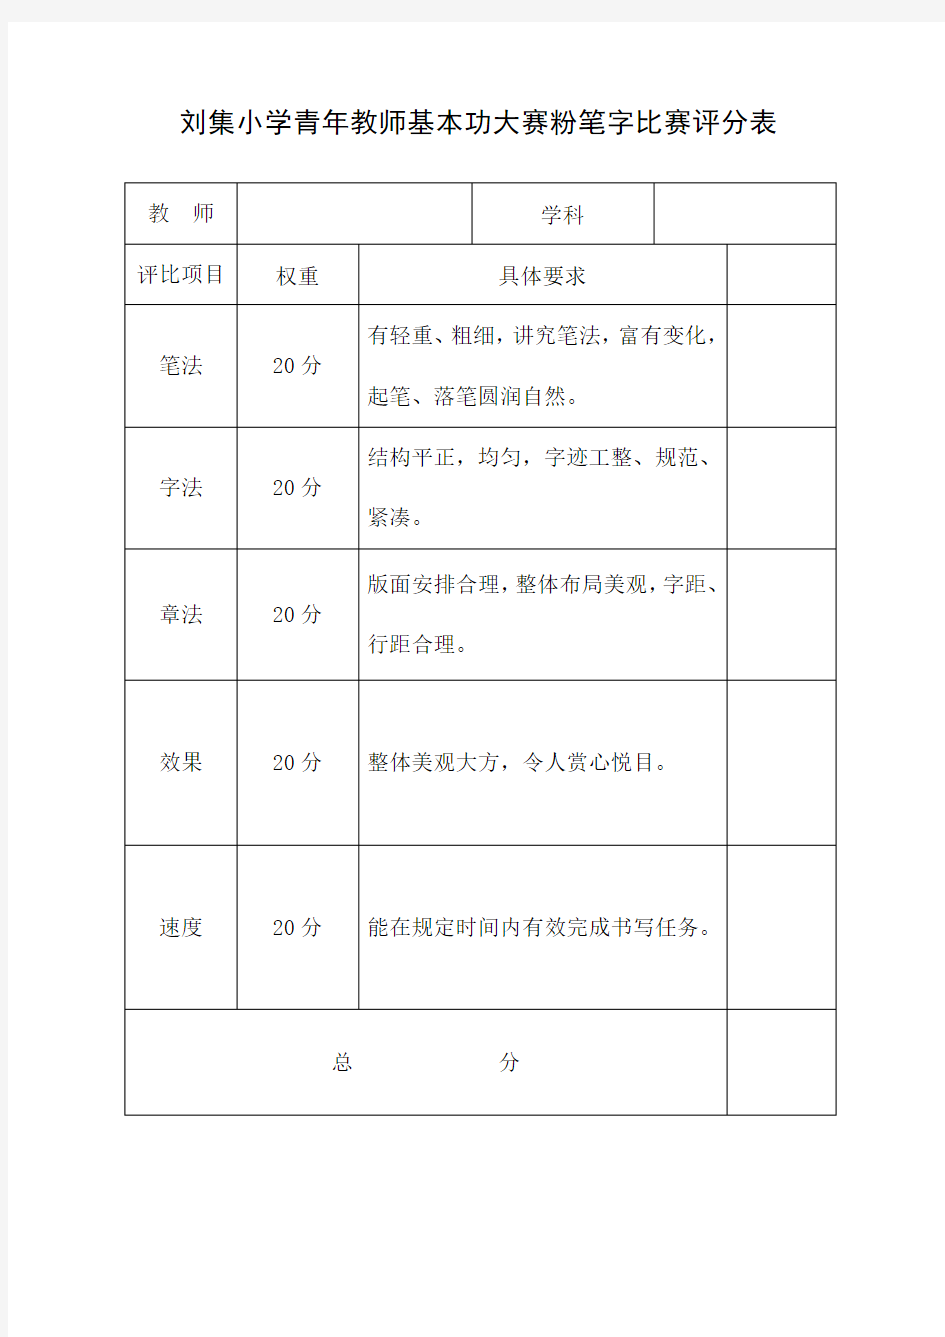 刘集小学青年教师基本功大赛粉笔字比赛评分表